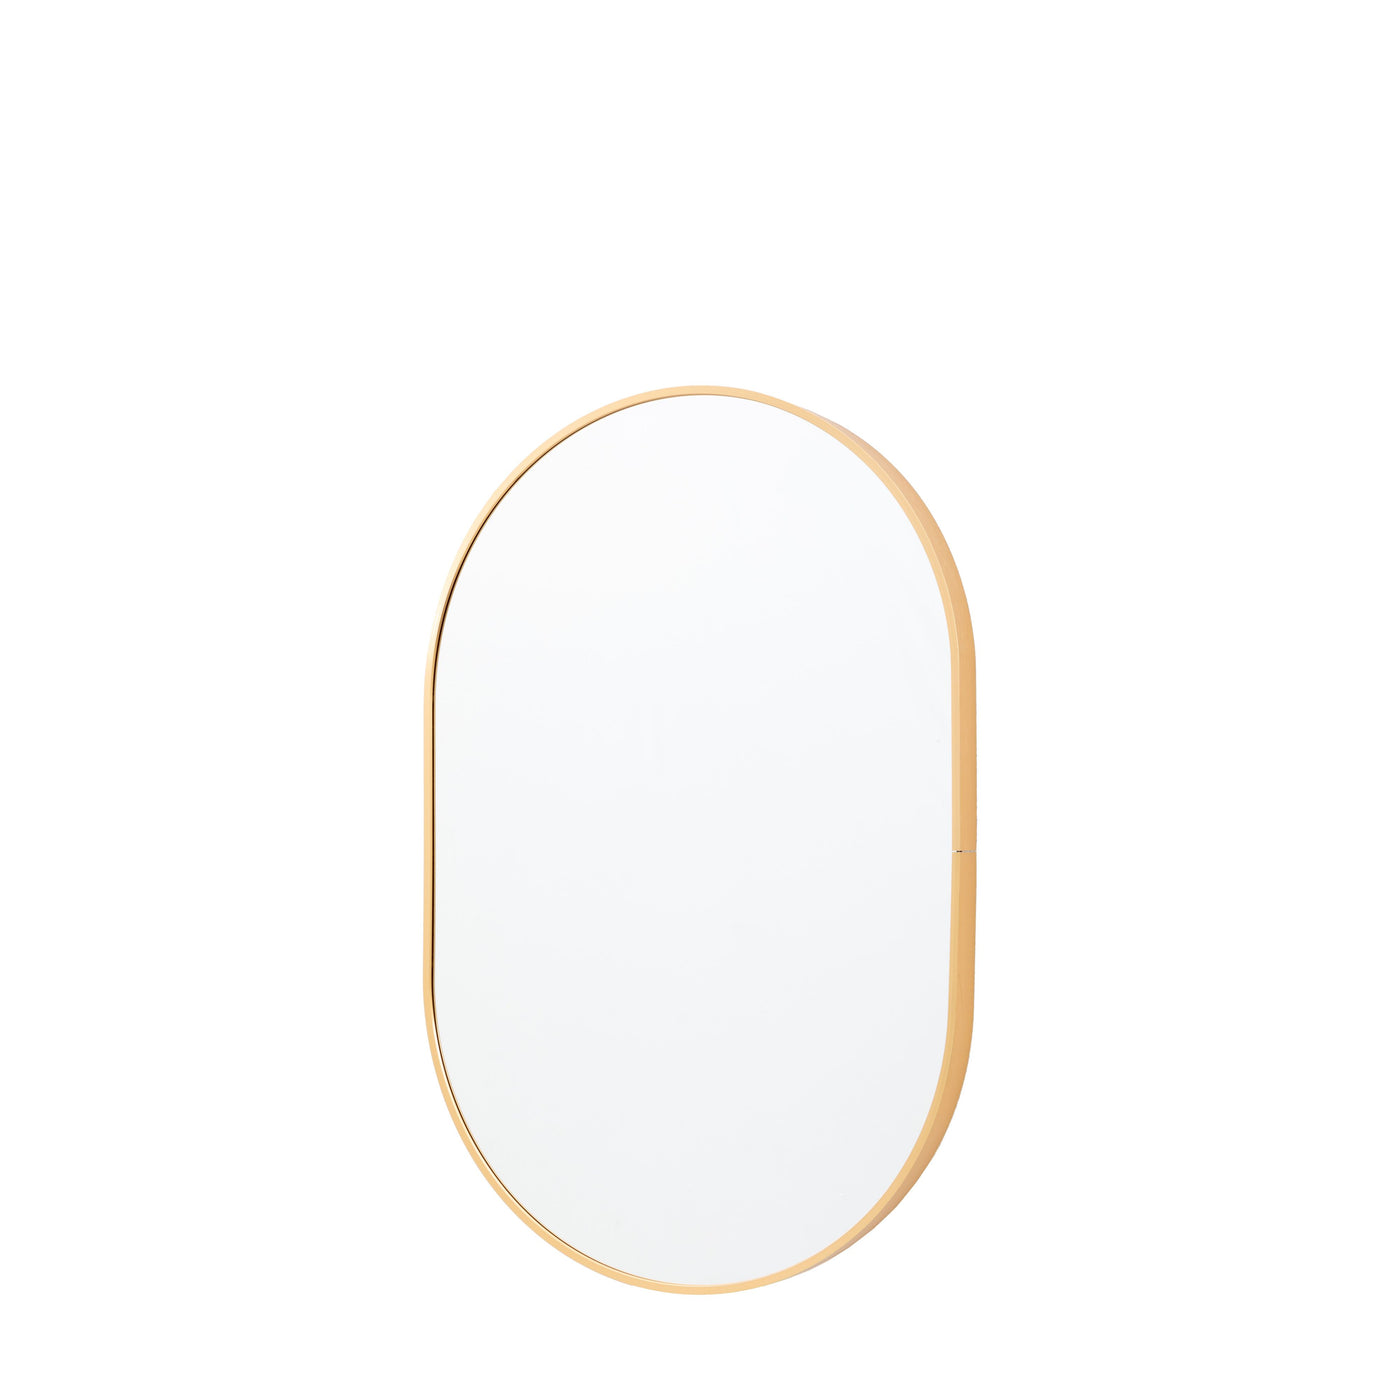 Boswyn Oval Gold Mirror - Small